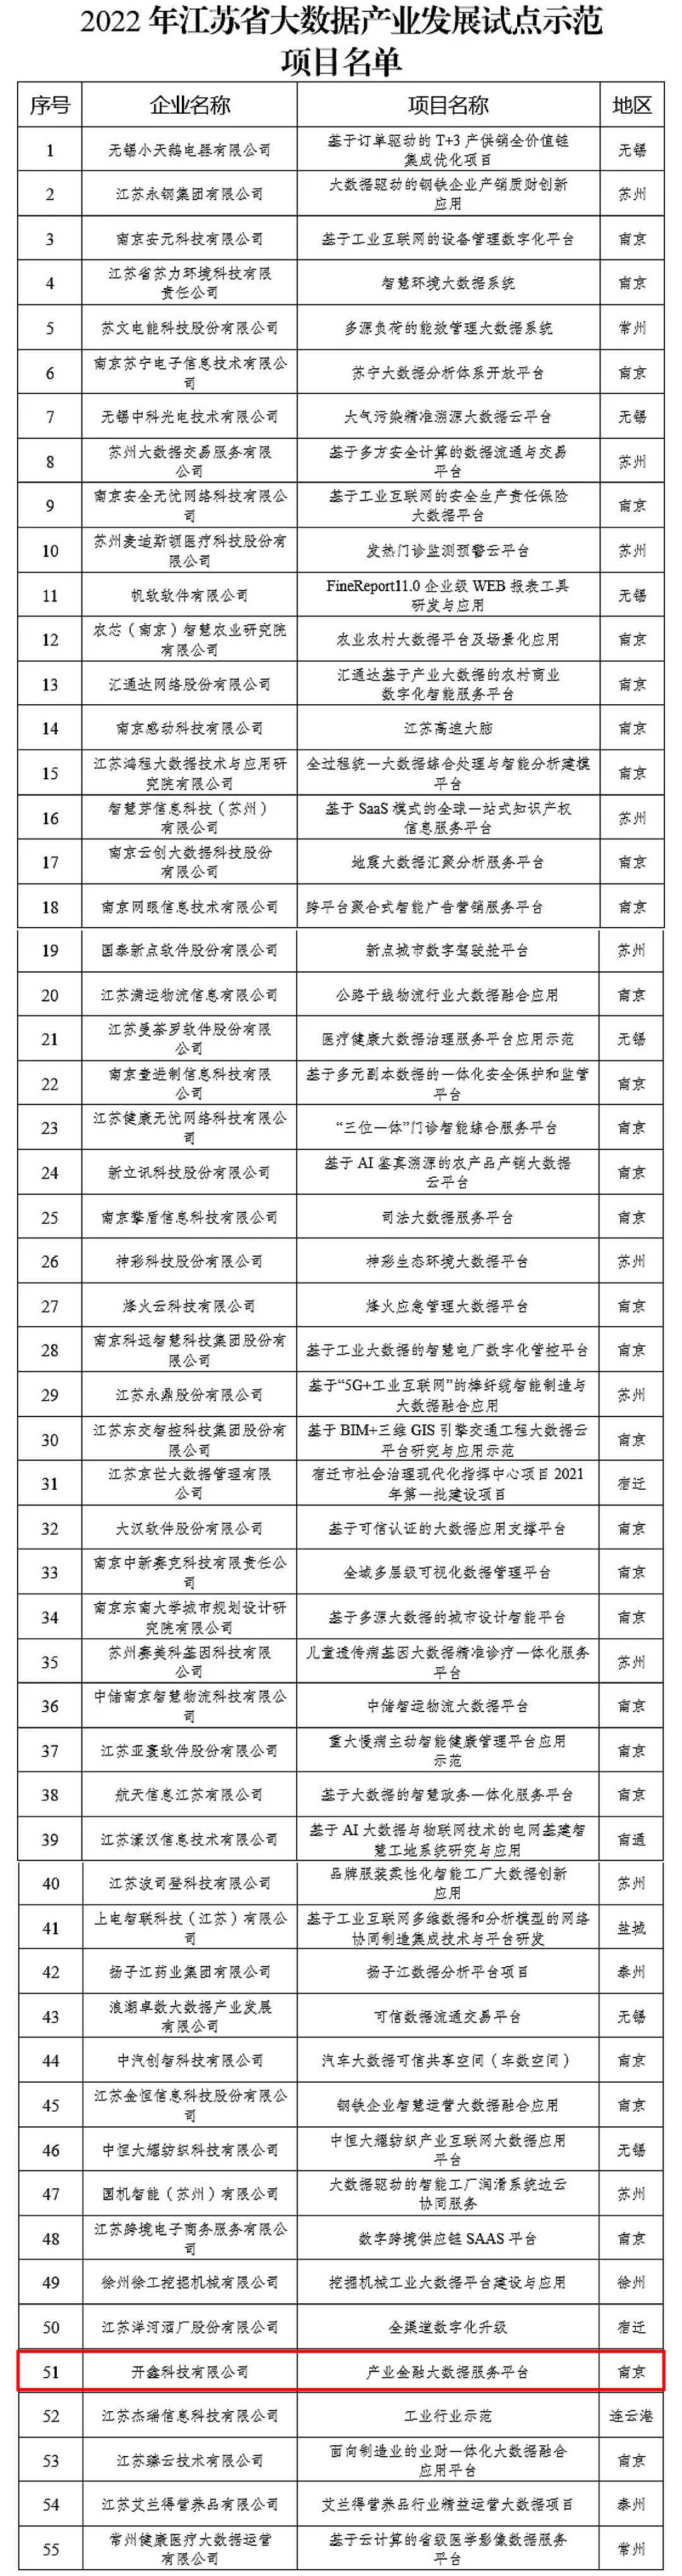 开鑫科技入选2022年江苏省大数据产业发展试点示范项目